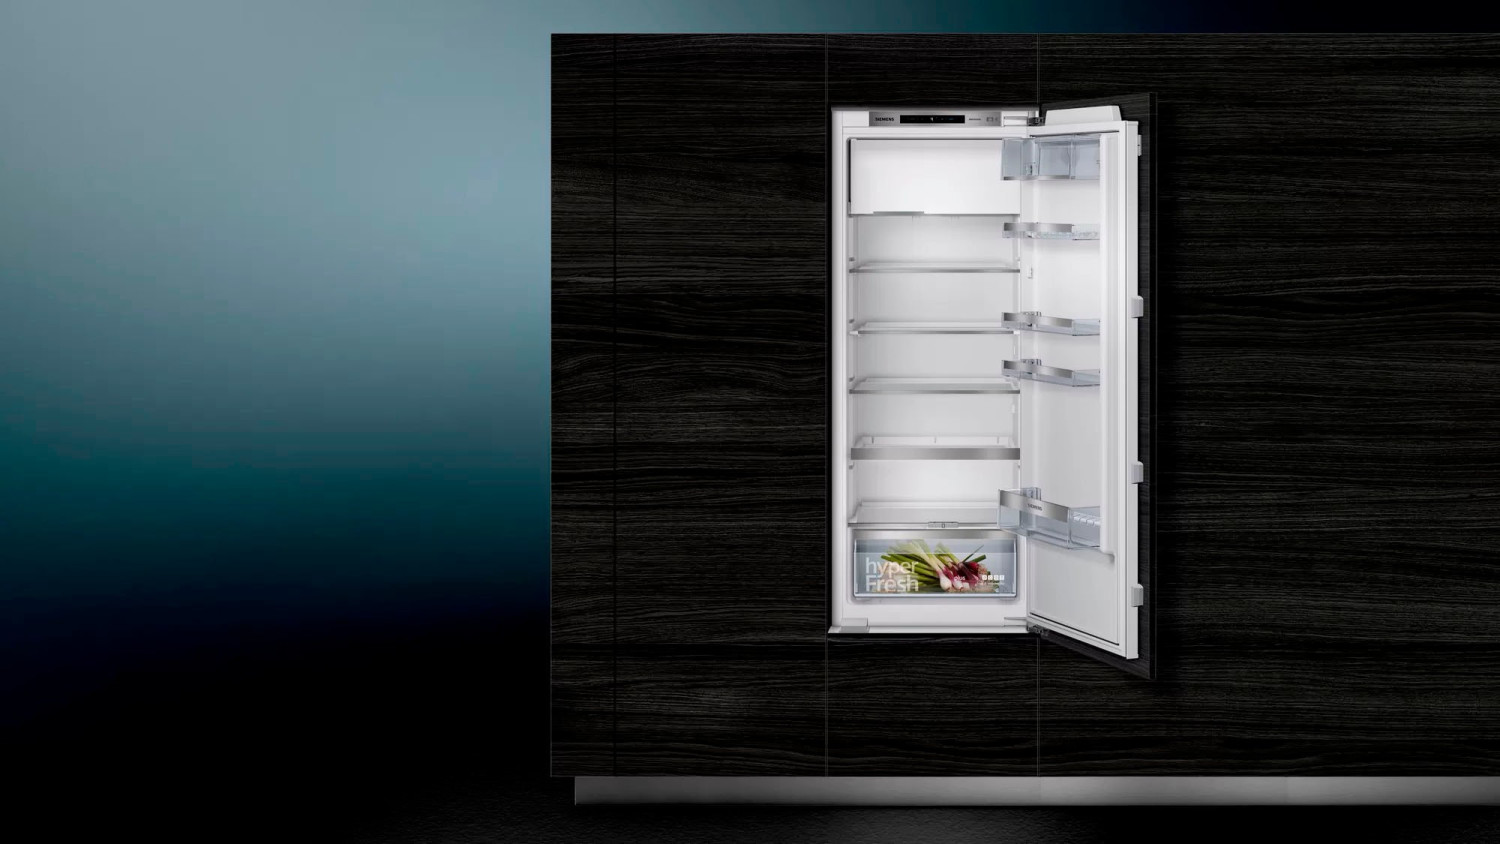 Siemens KI52LADE0  Einbaukühlschrank  Inhalt Kühlbereich 213 